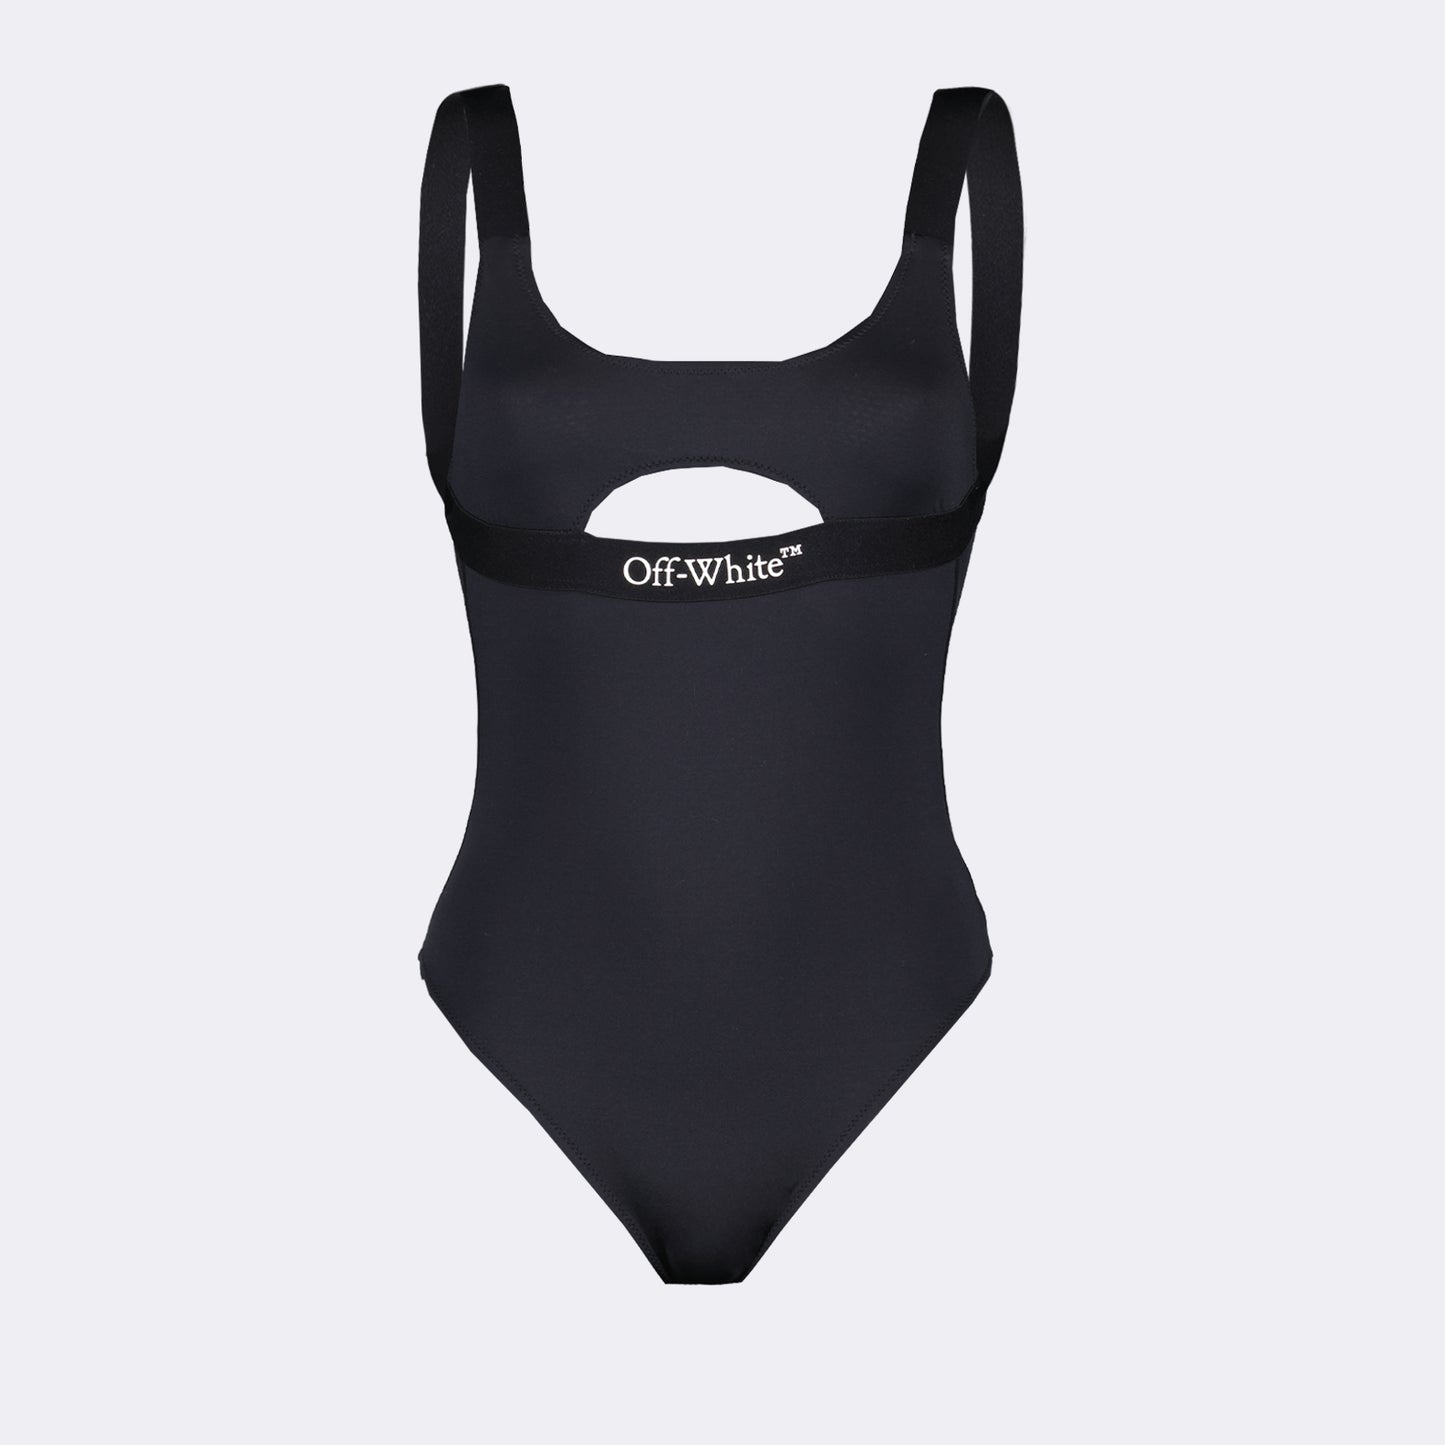 Logoband swimsuit